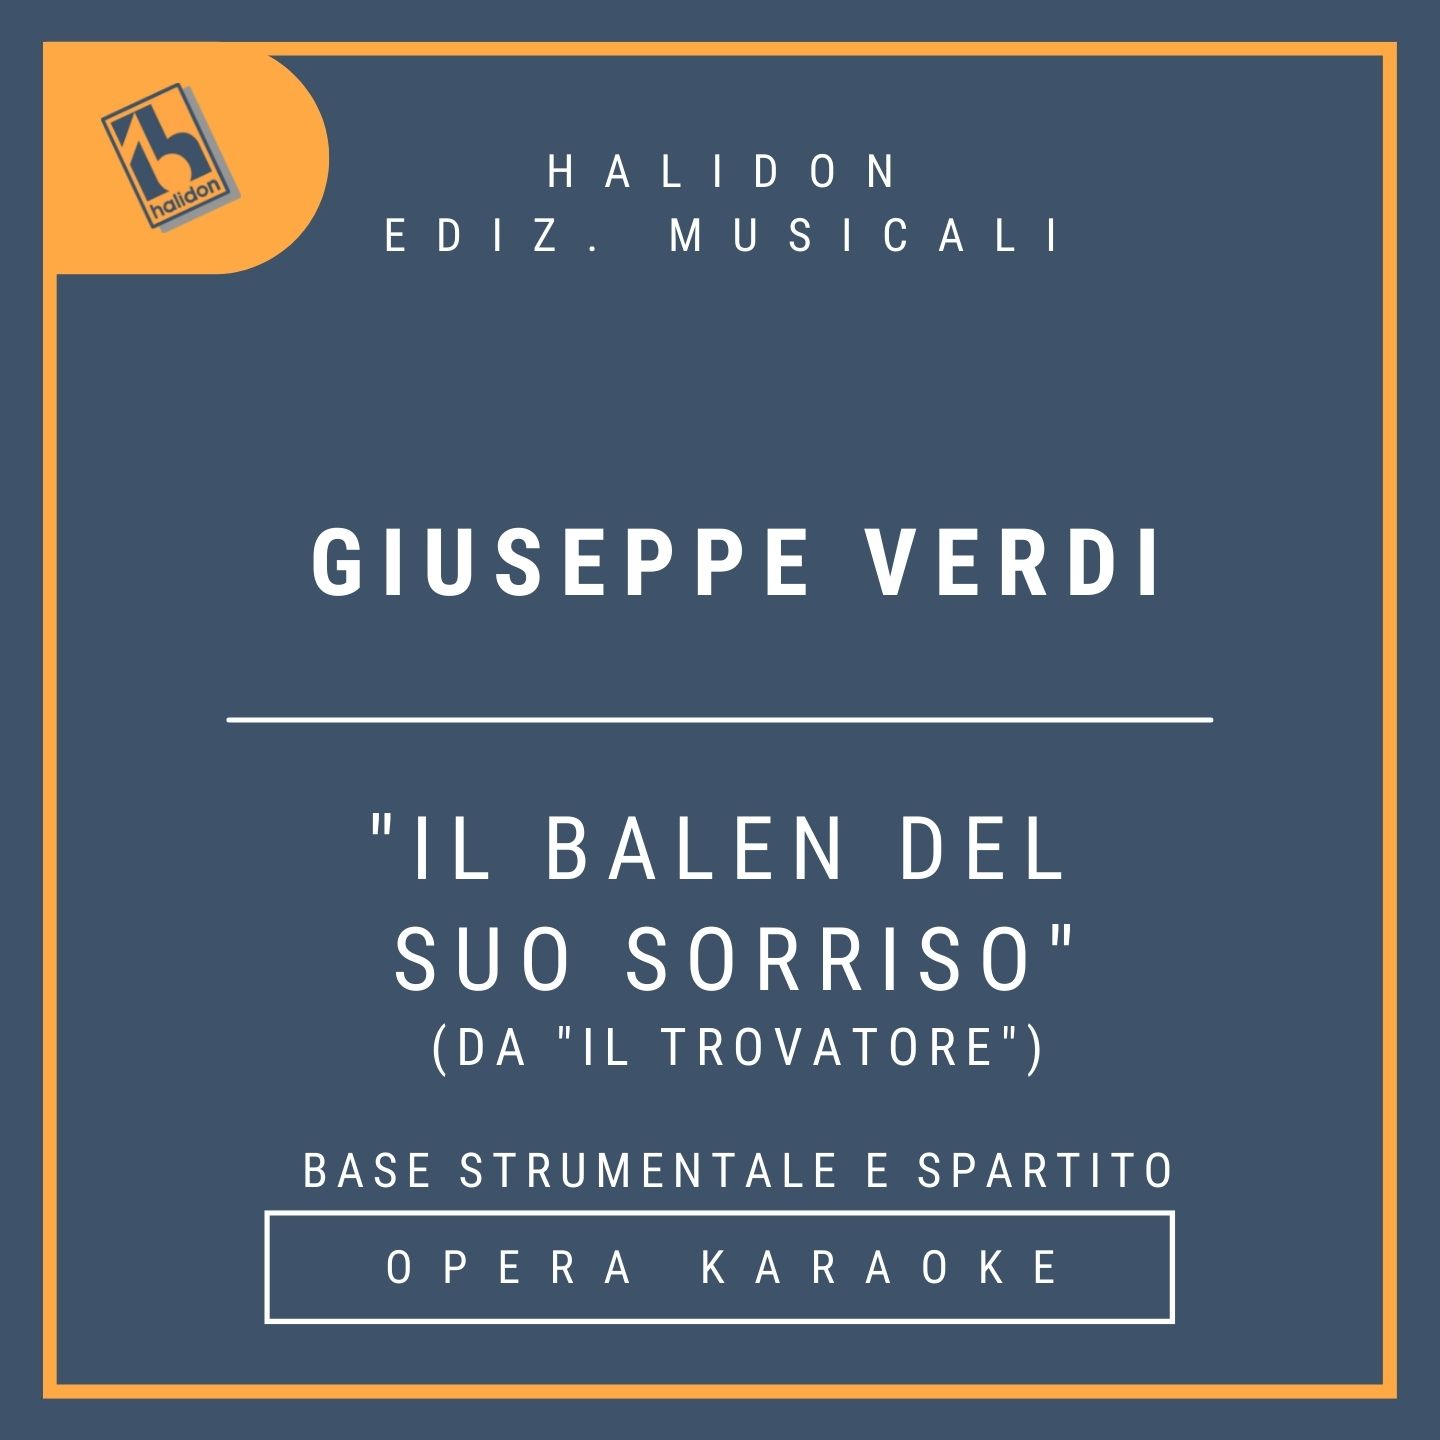 Giuseppe Verdi - Il balen del suo sorriso (from 'Il trovatore') - Conte Luna's Aria (baritone) - Instrumental track + sheet